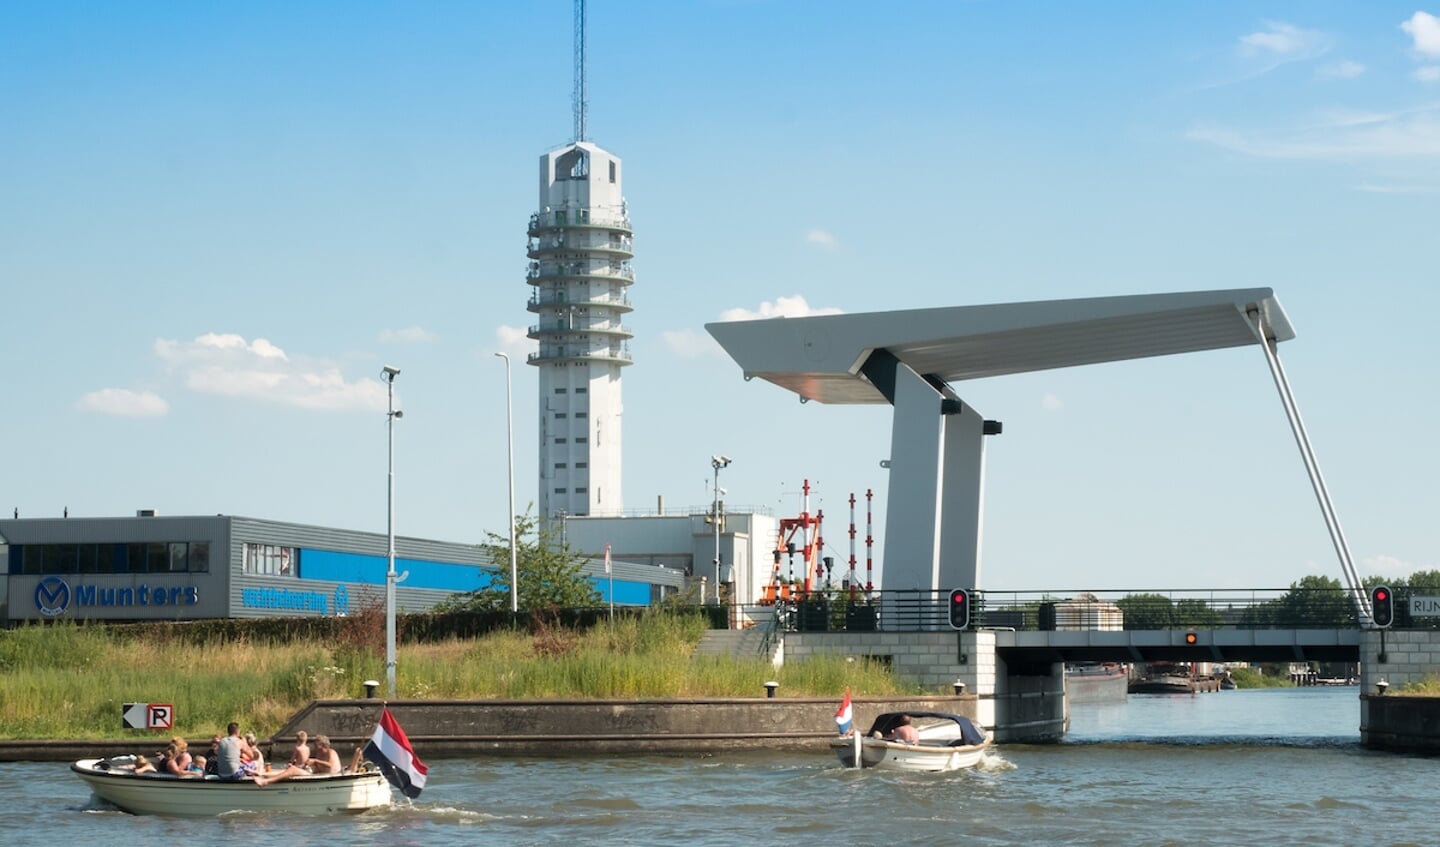 De gemeente Alphen aan den Rijn start met de aanleg van een viertal laadvoorzieningen voor elektrisch varen.